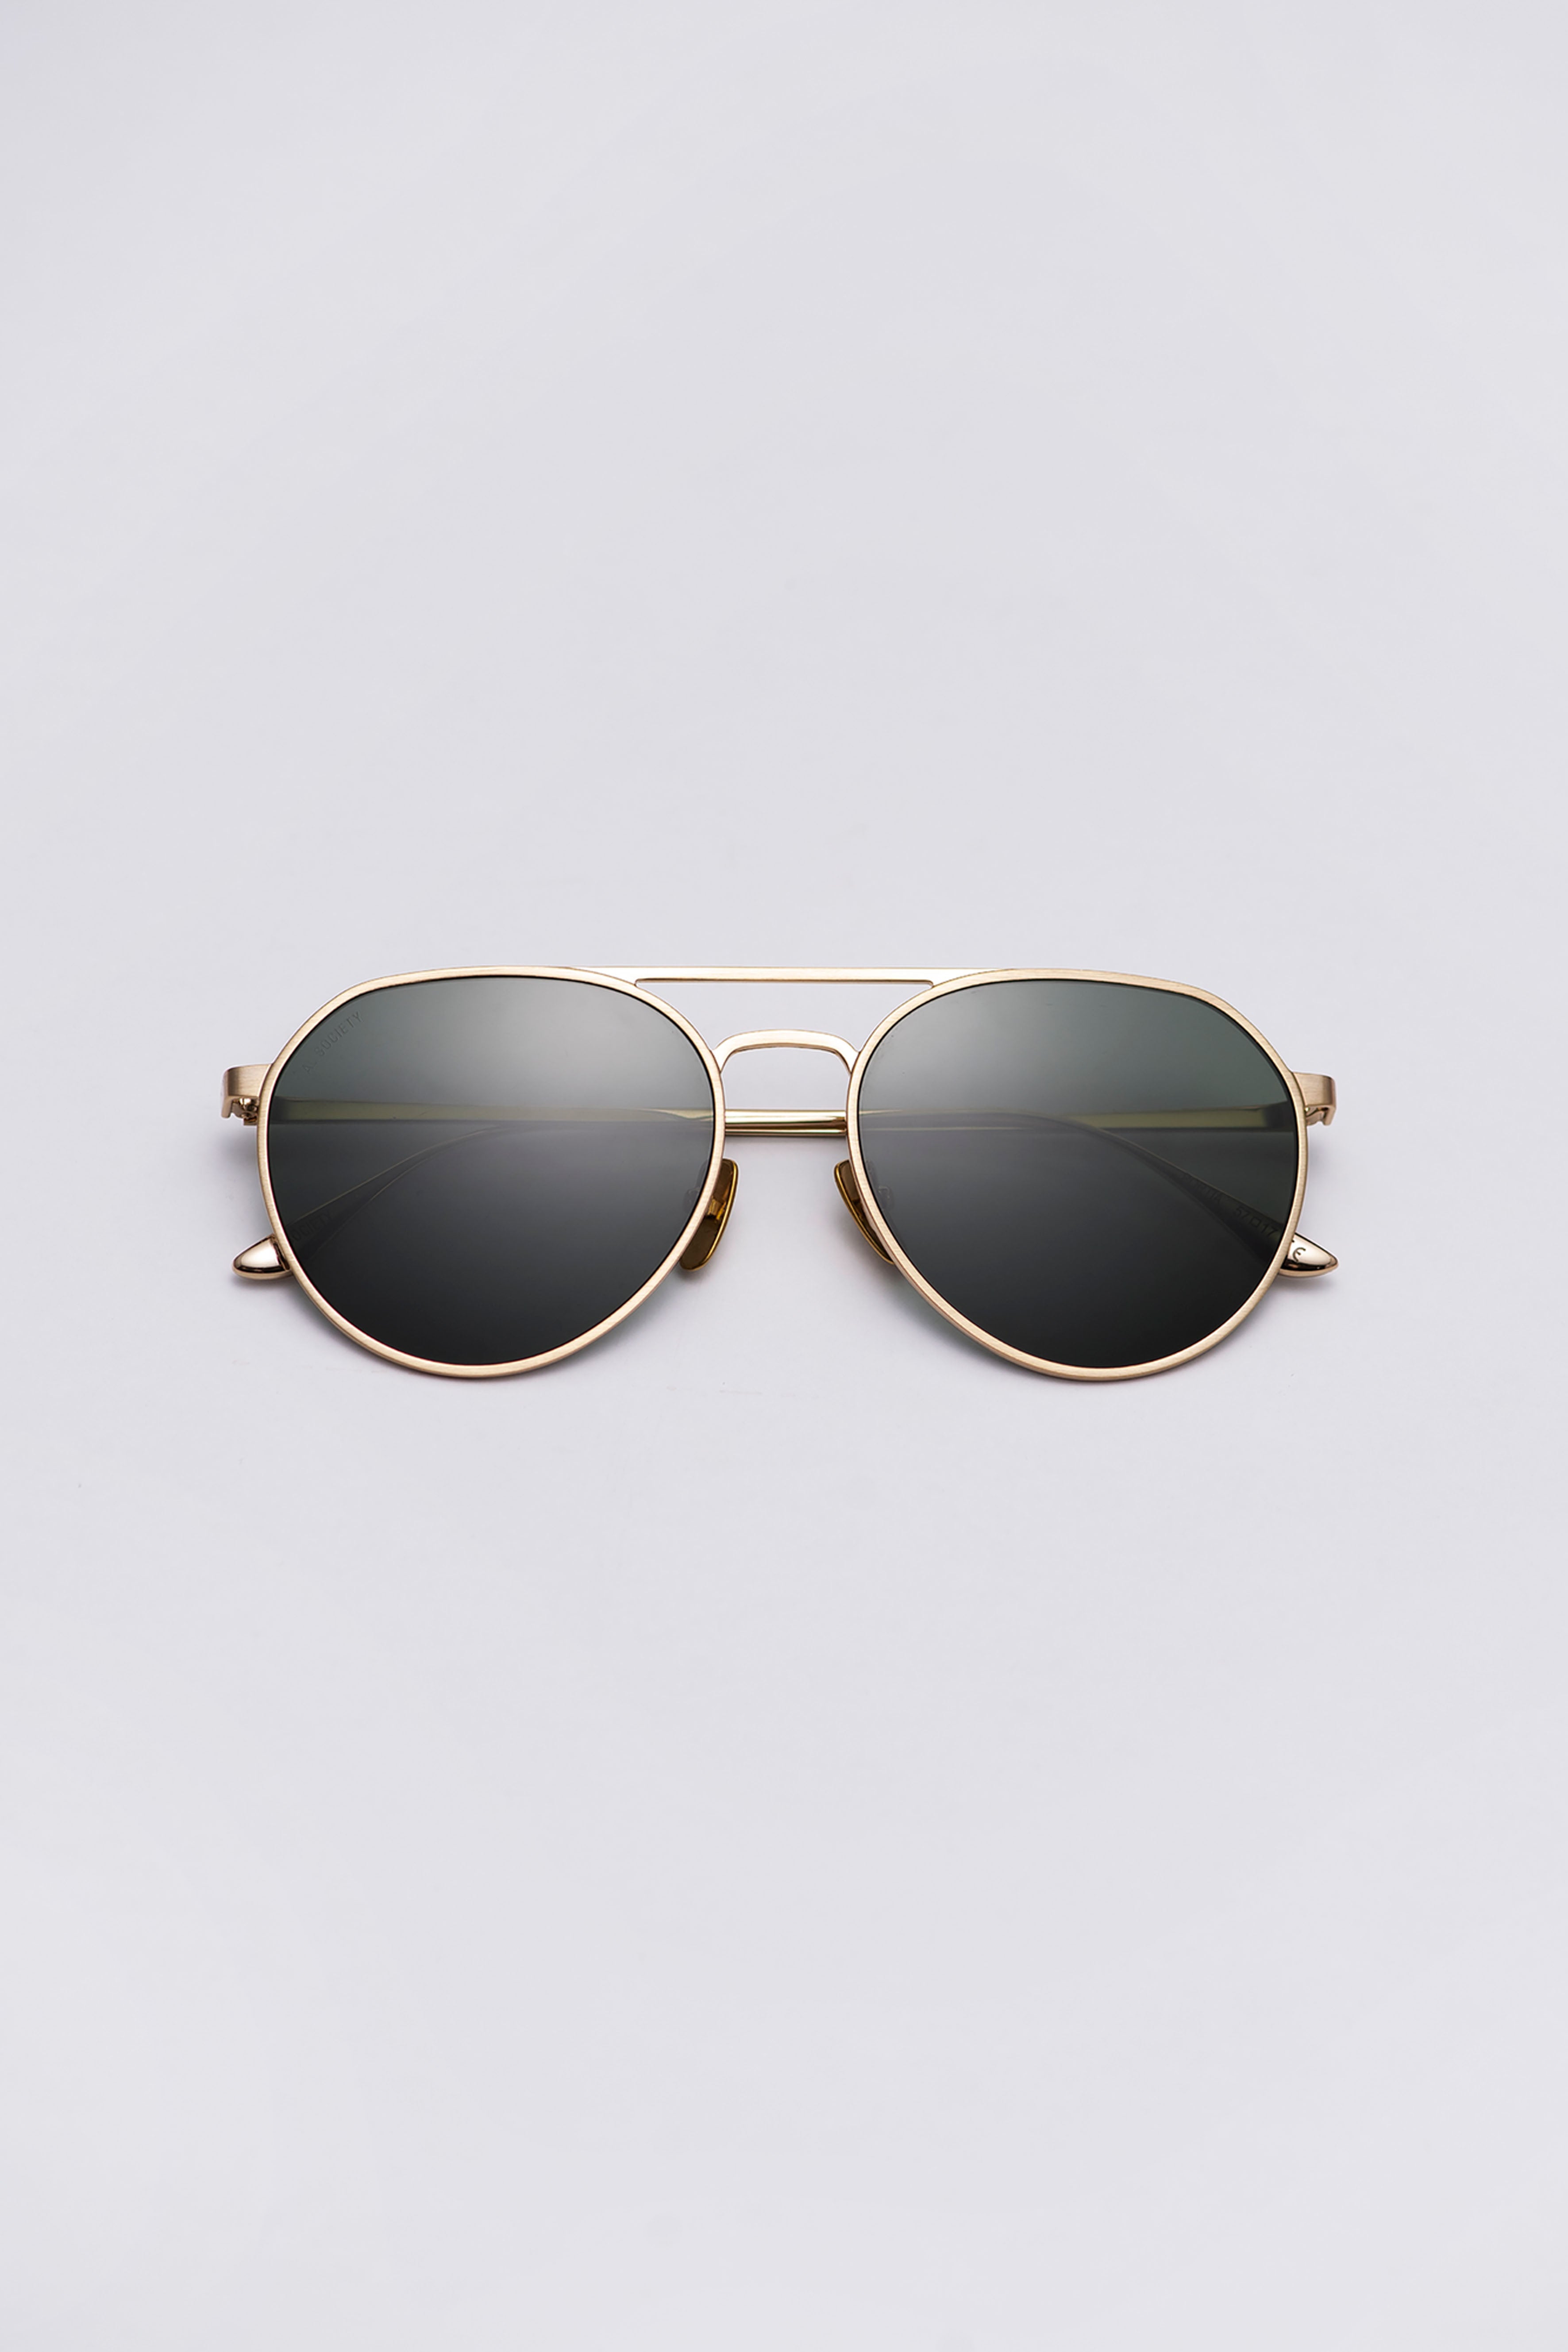 Paabi Sunglasses/925 Sterling Silver/18k Gold -  Hong Kong